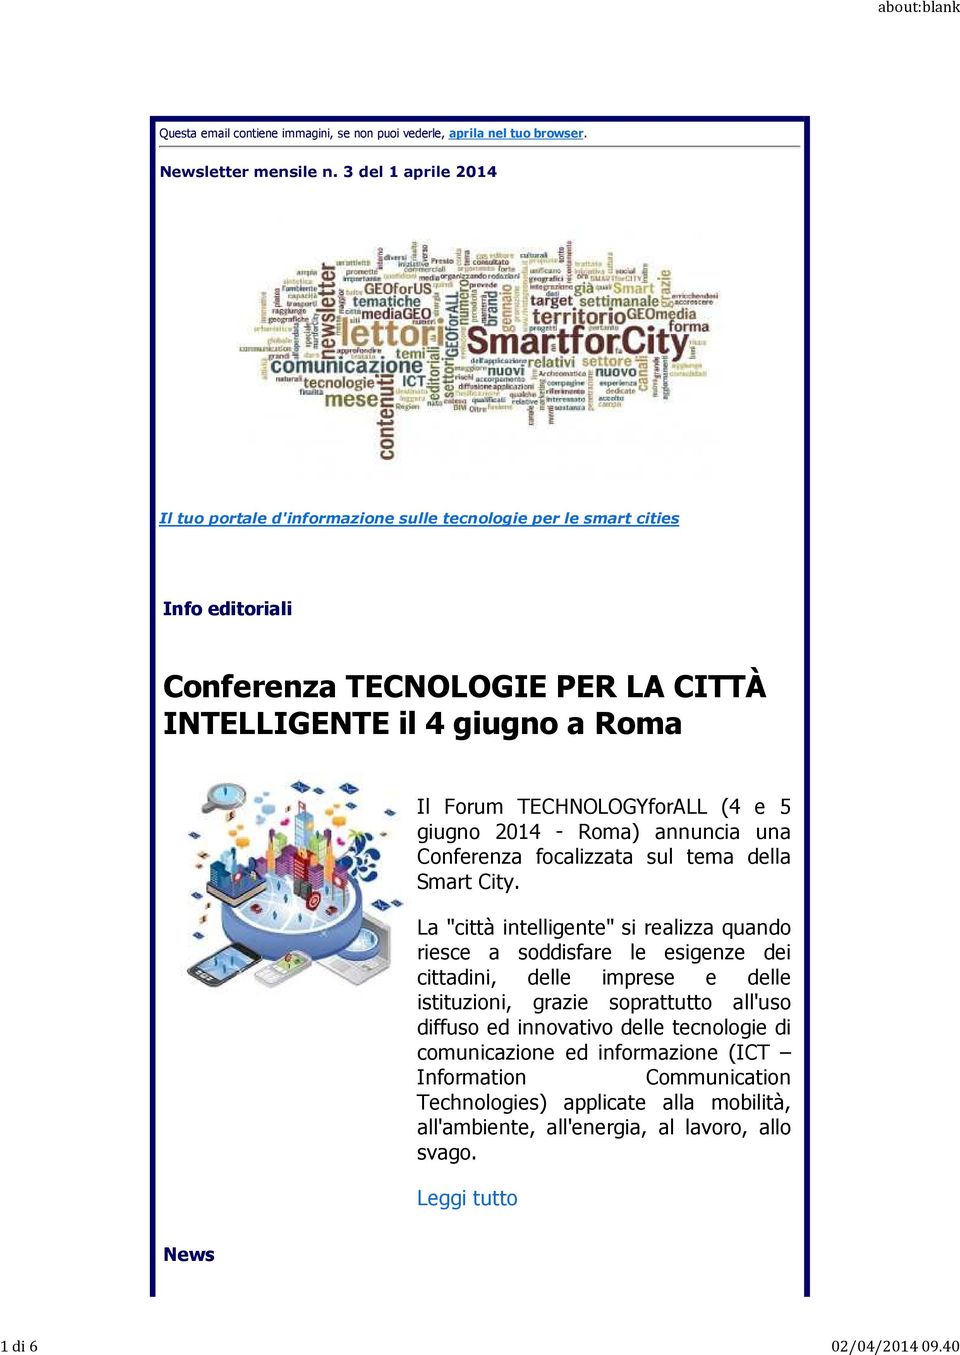 TECHNOLOGYforALL (4 e 5 giugno 2014 - Roma) annuncia una Conferenza focalizzata sul tema della Smart City.